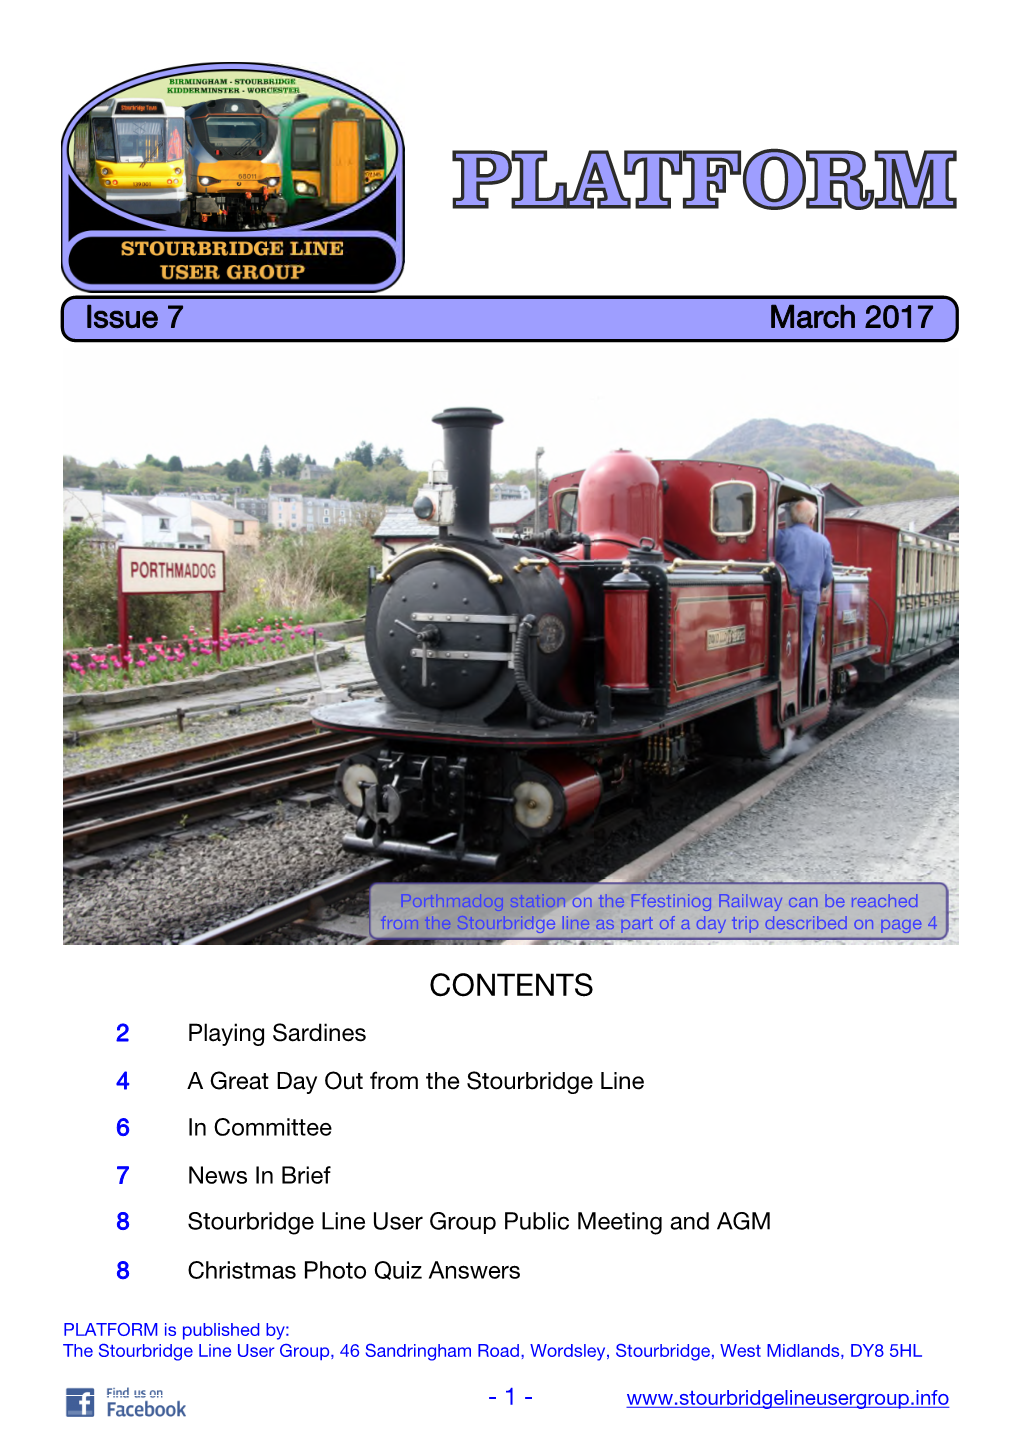 PLATFORM Is Published By: the Stourbridge Line User Group, 46 Sandringham Road, Wordsley, Stourbridge, West Midlands, DY8 5HL